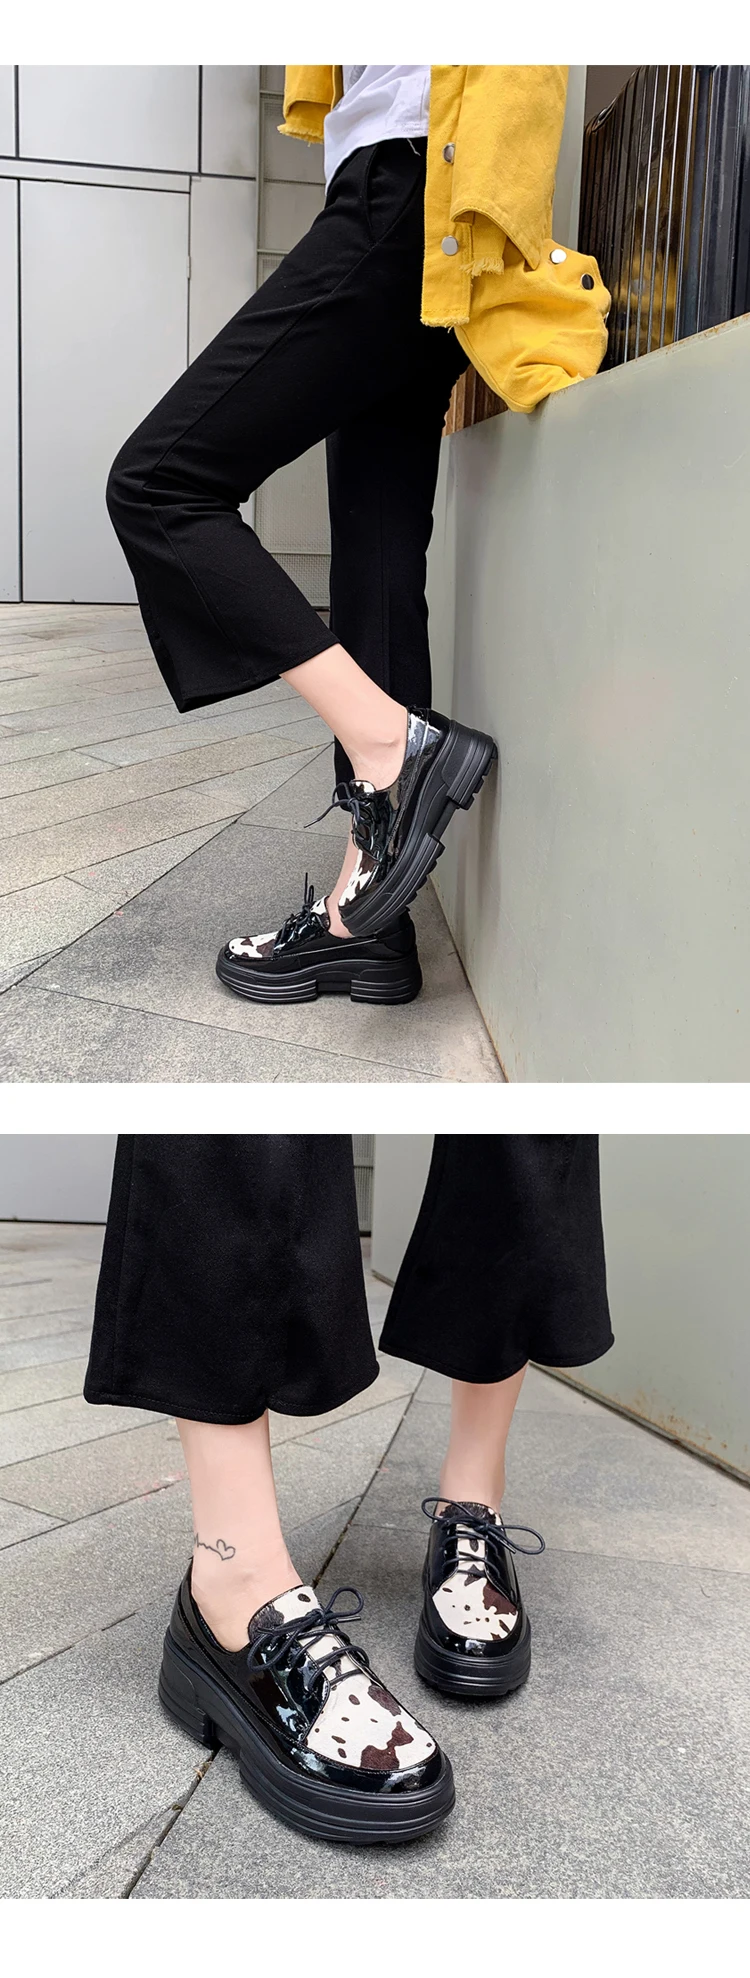 INS/Популярная женская обувь Туфли-лодочки из натуральной кожи и конского волоса длиной 22,5-24,5 см Женская обувь Корейская обувь с леопардовым принтом Дамская обувь